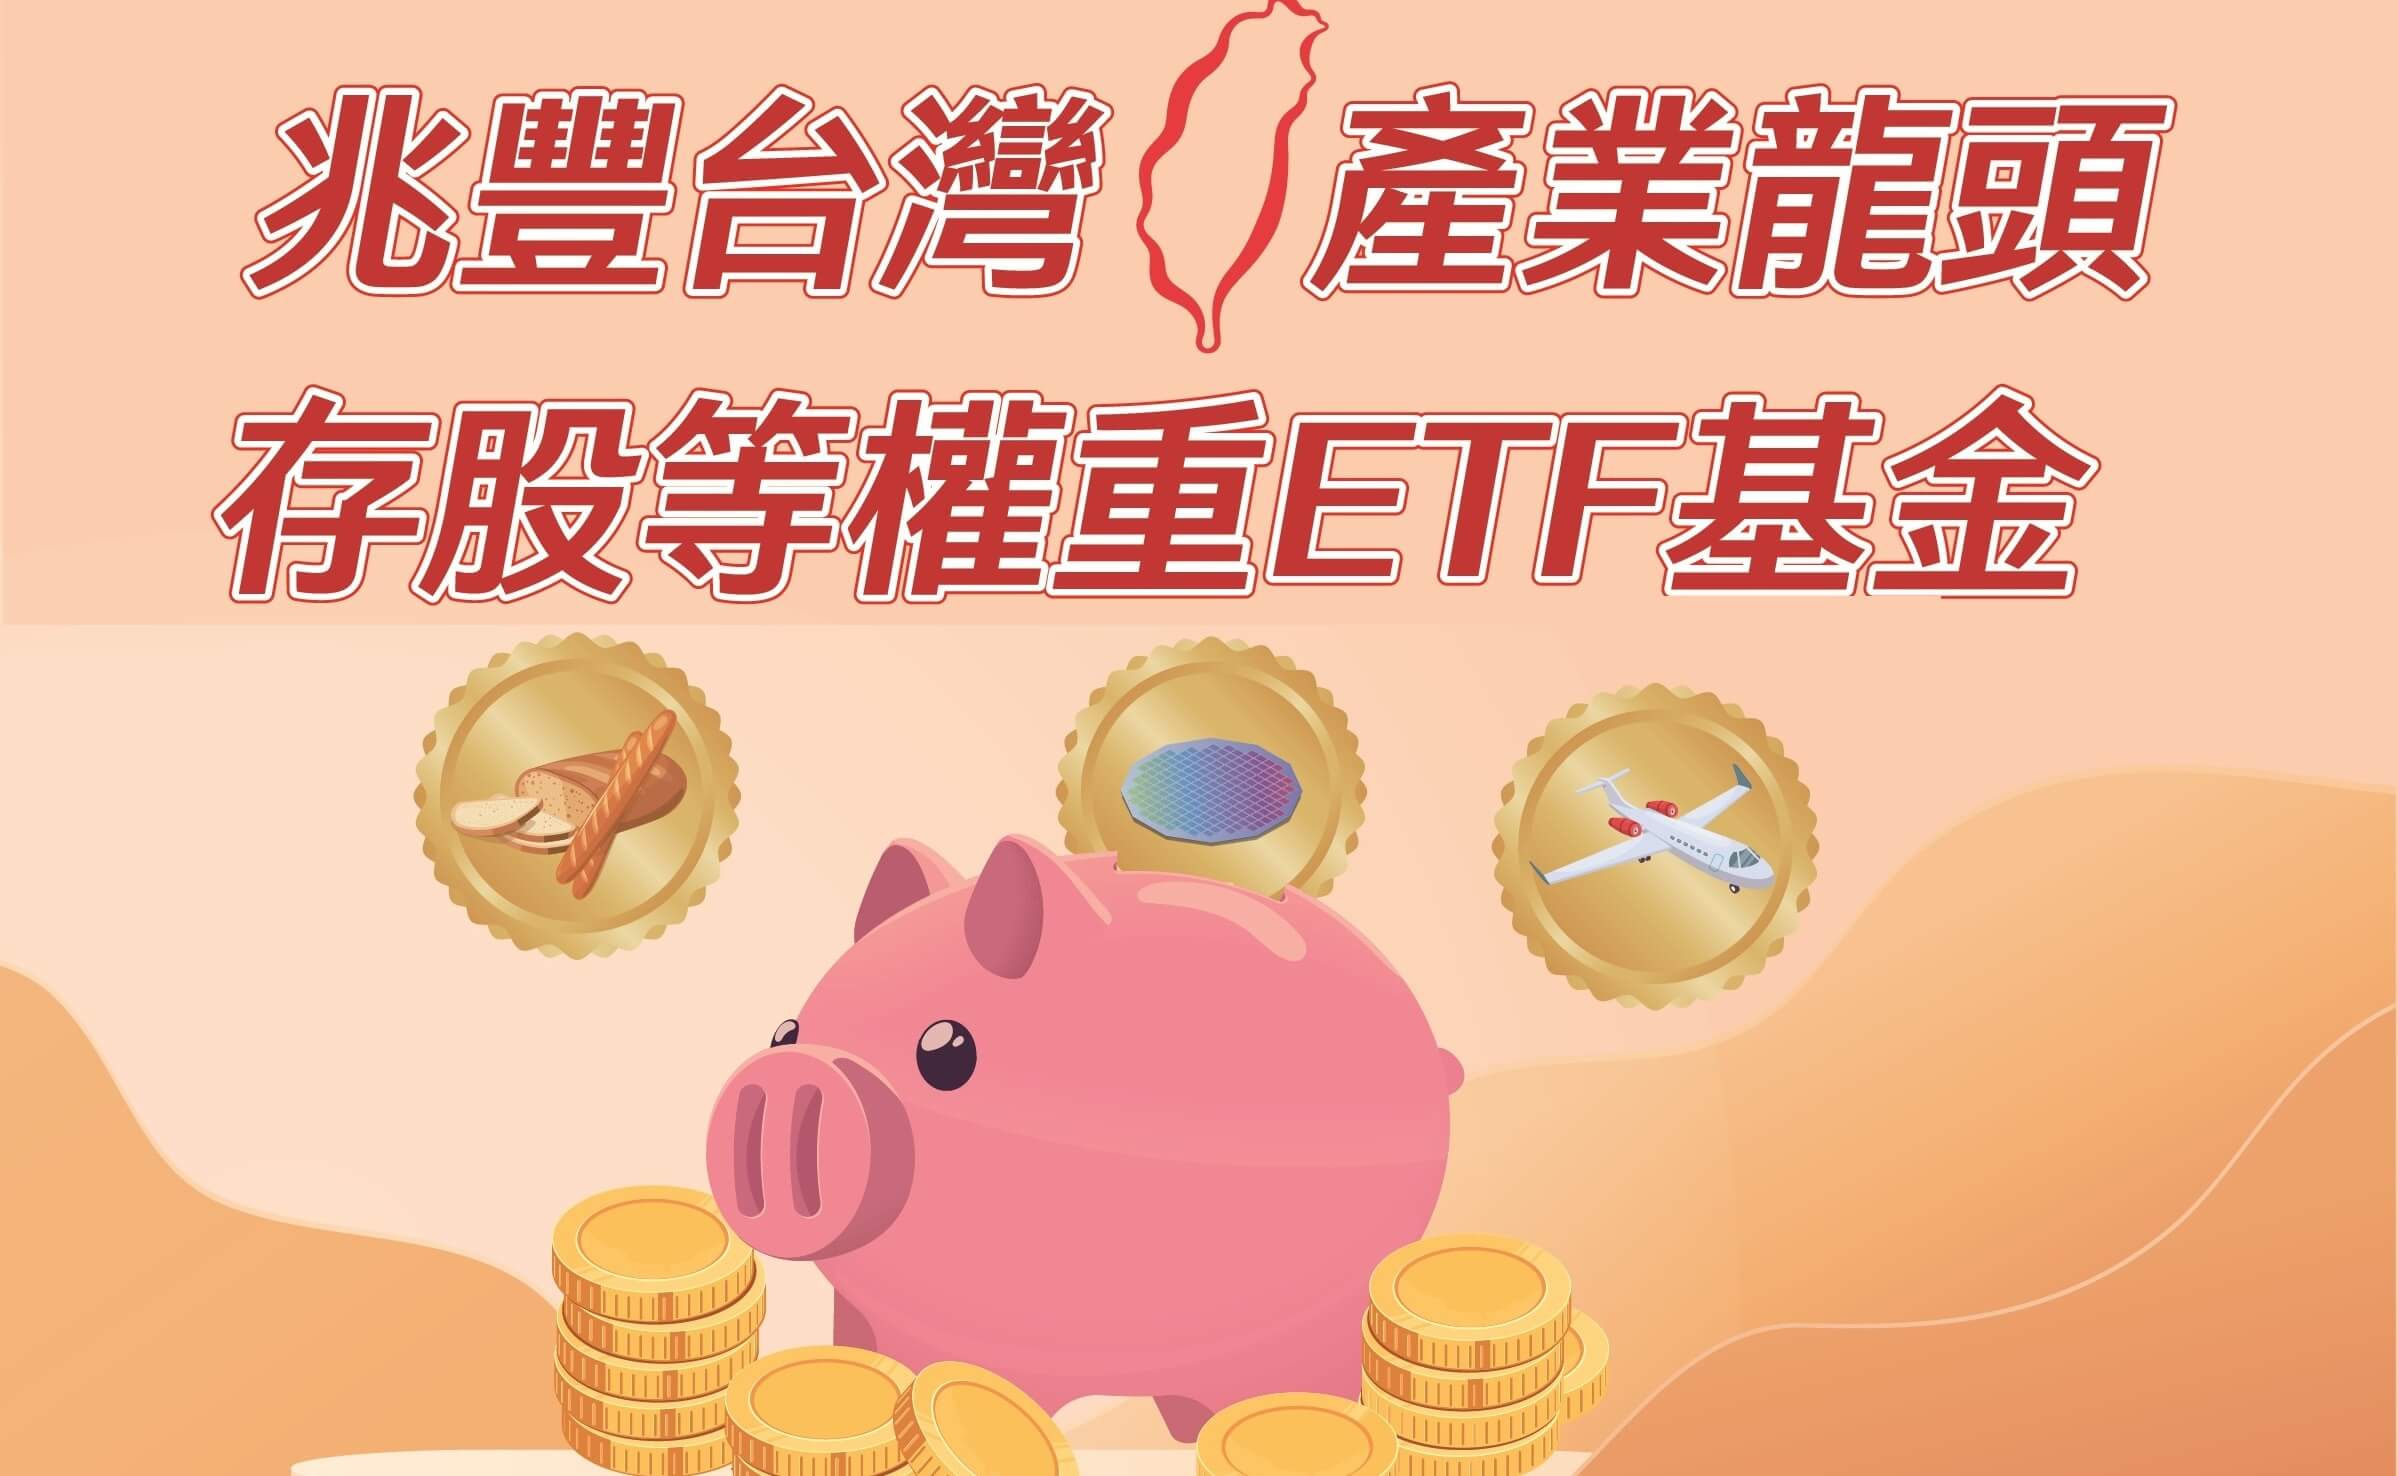 兆豐台灣產業龍頭存股等權重ETF基金